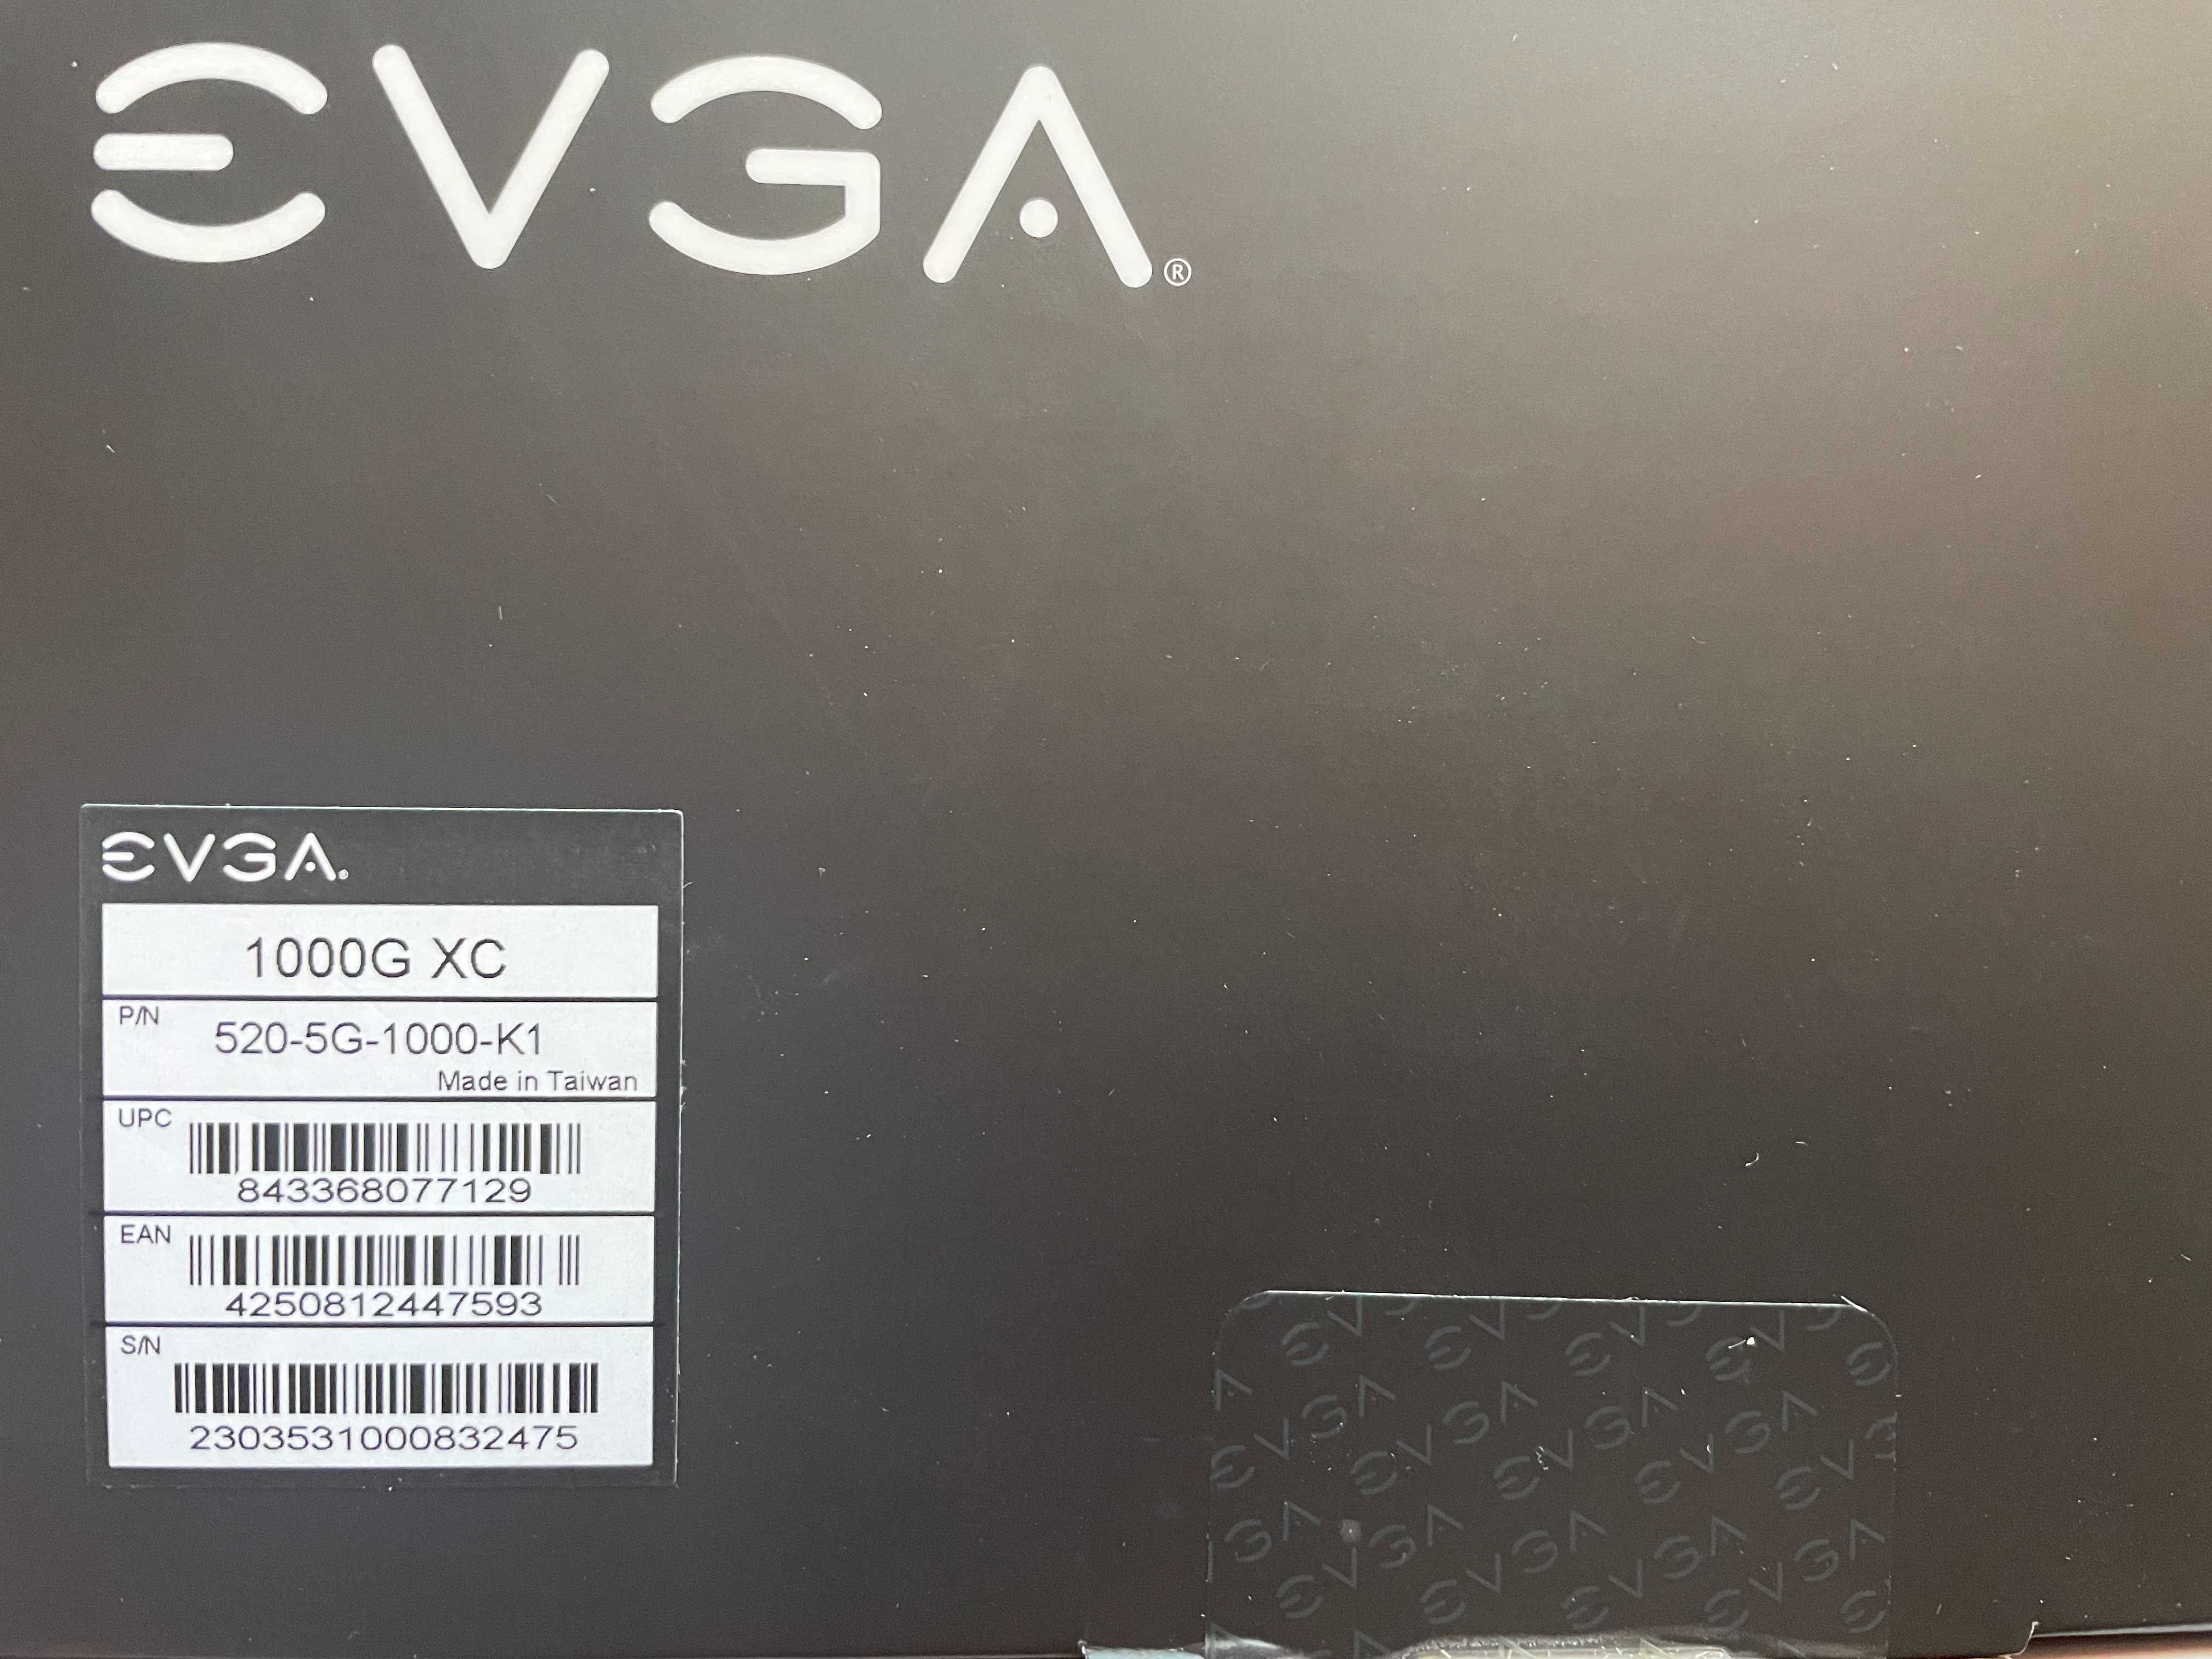 Блок питания новый EVGA SuperNOVA 1000G XC 80 Plus Gold, ATX 3.0 1000W